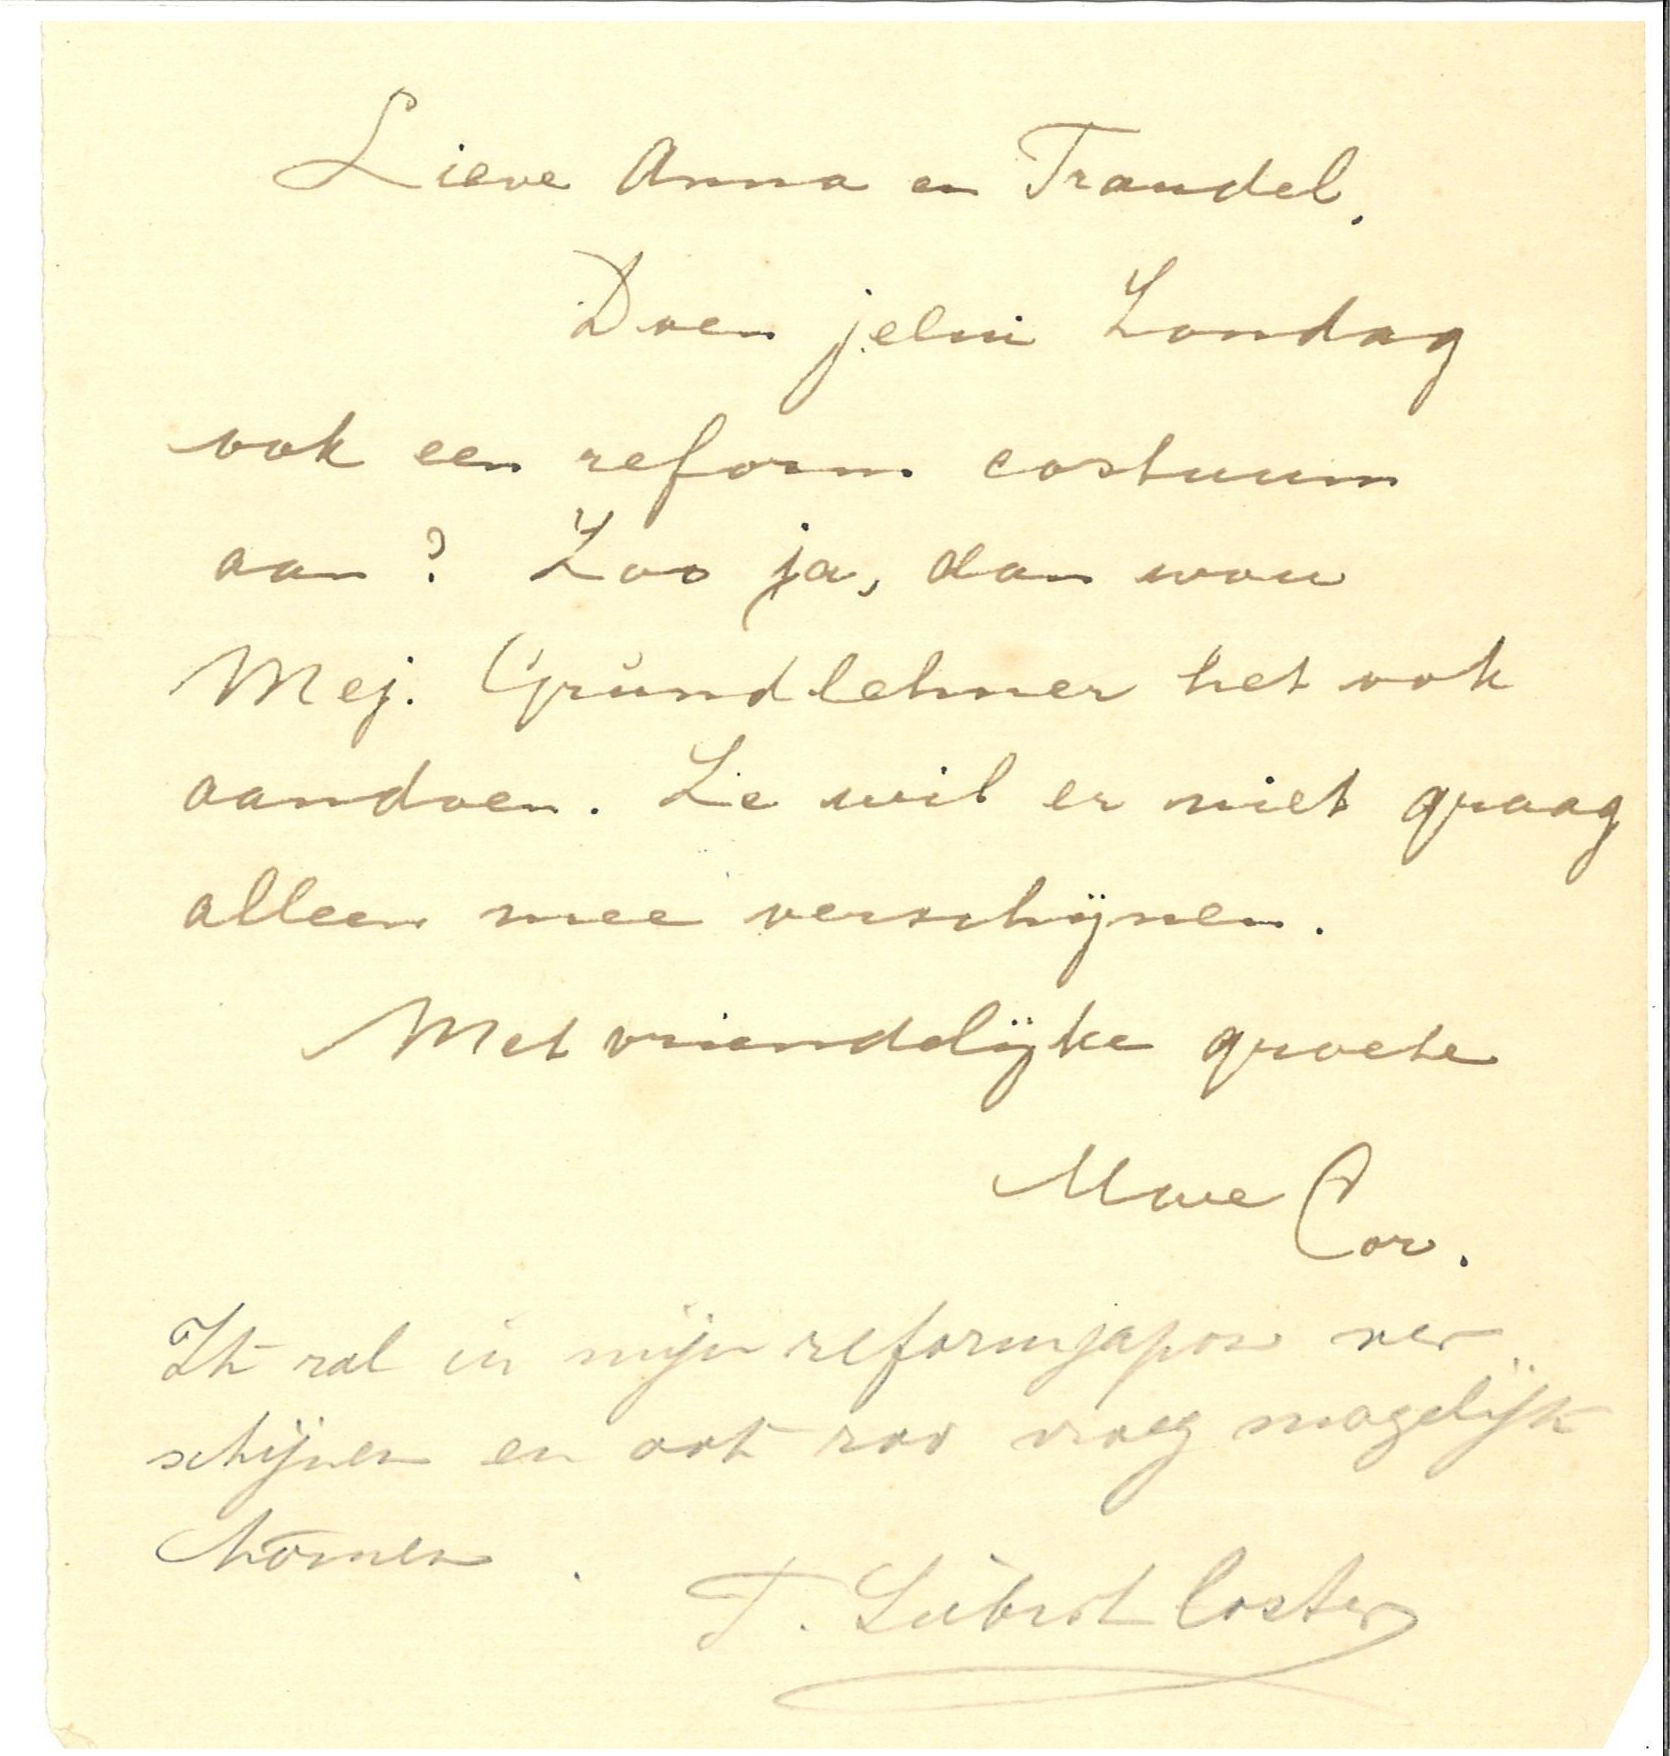 Briefje van Cornelia De Lange Tigler Wijbrandi aan medebestuursleden